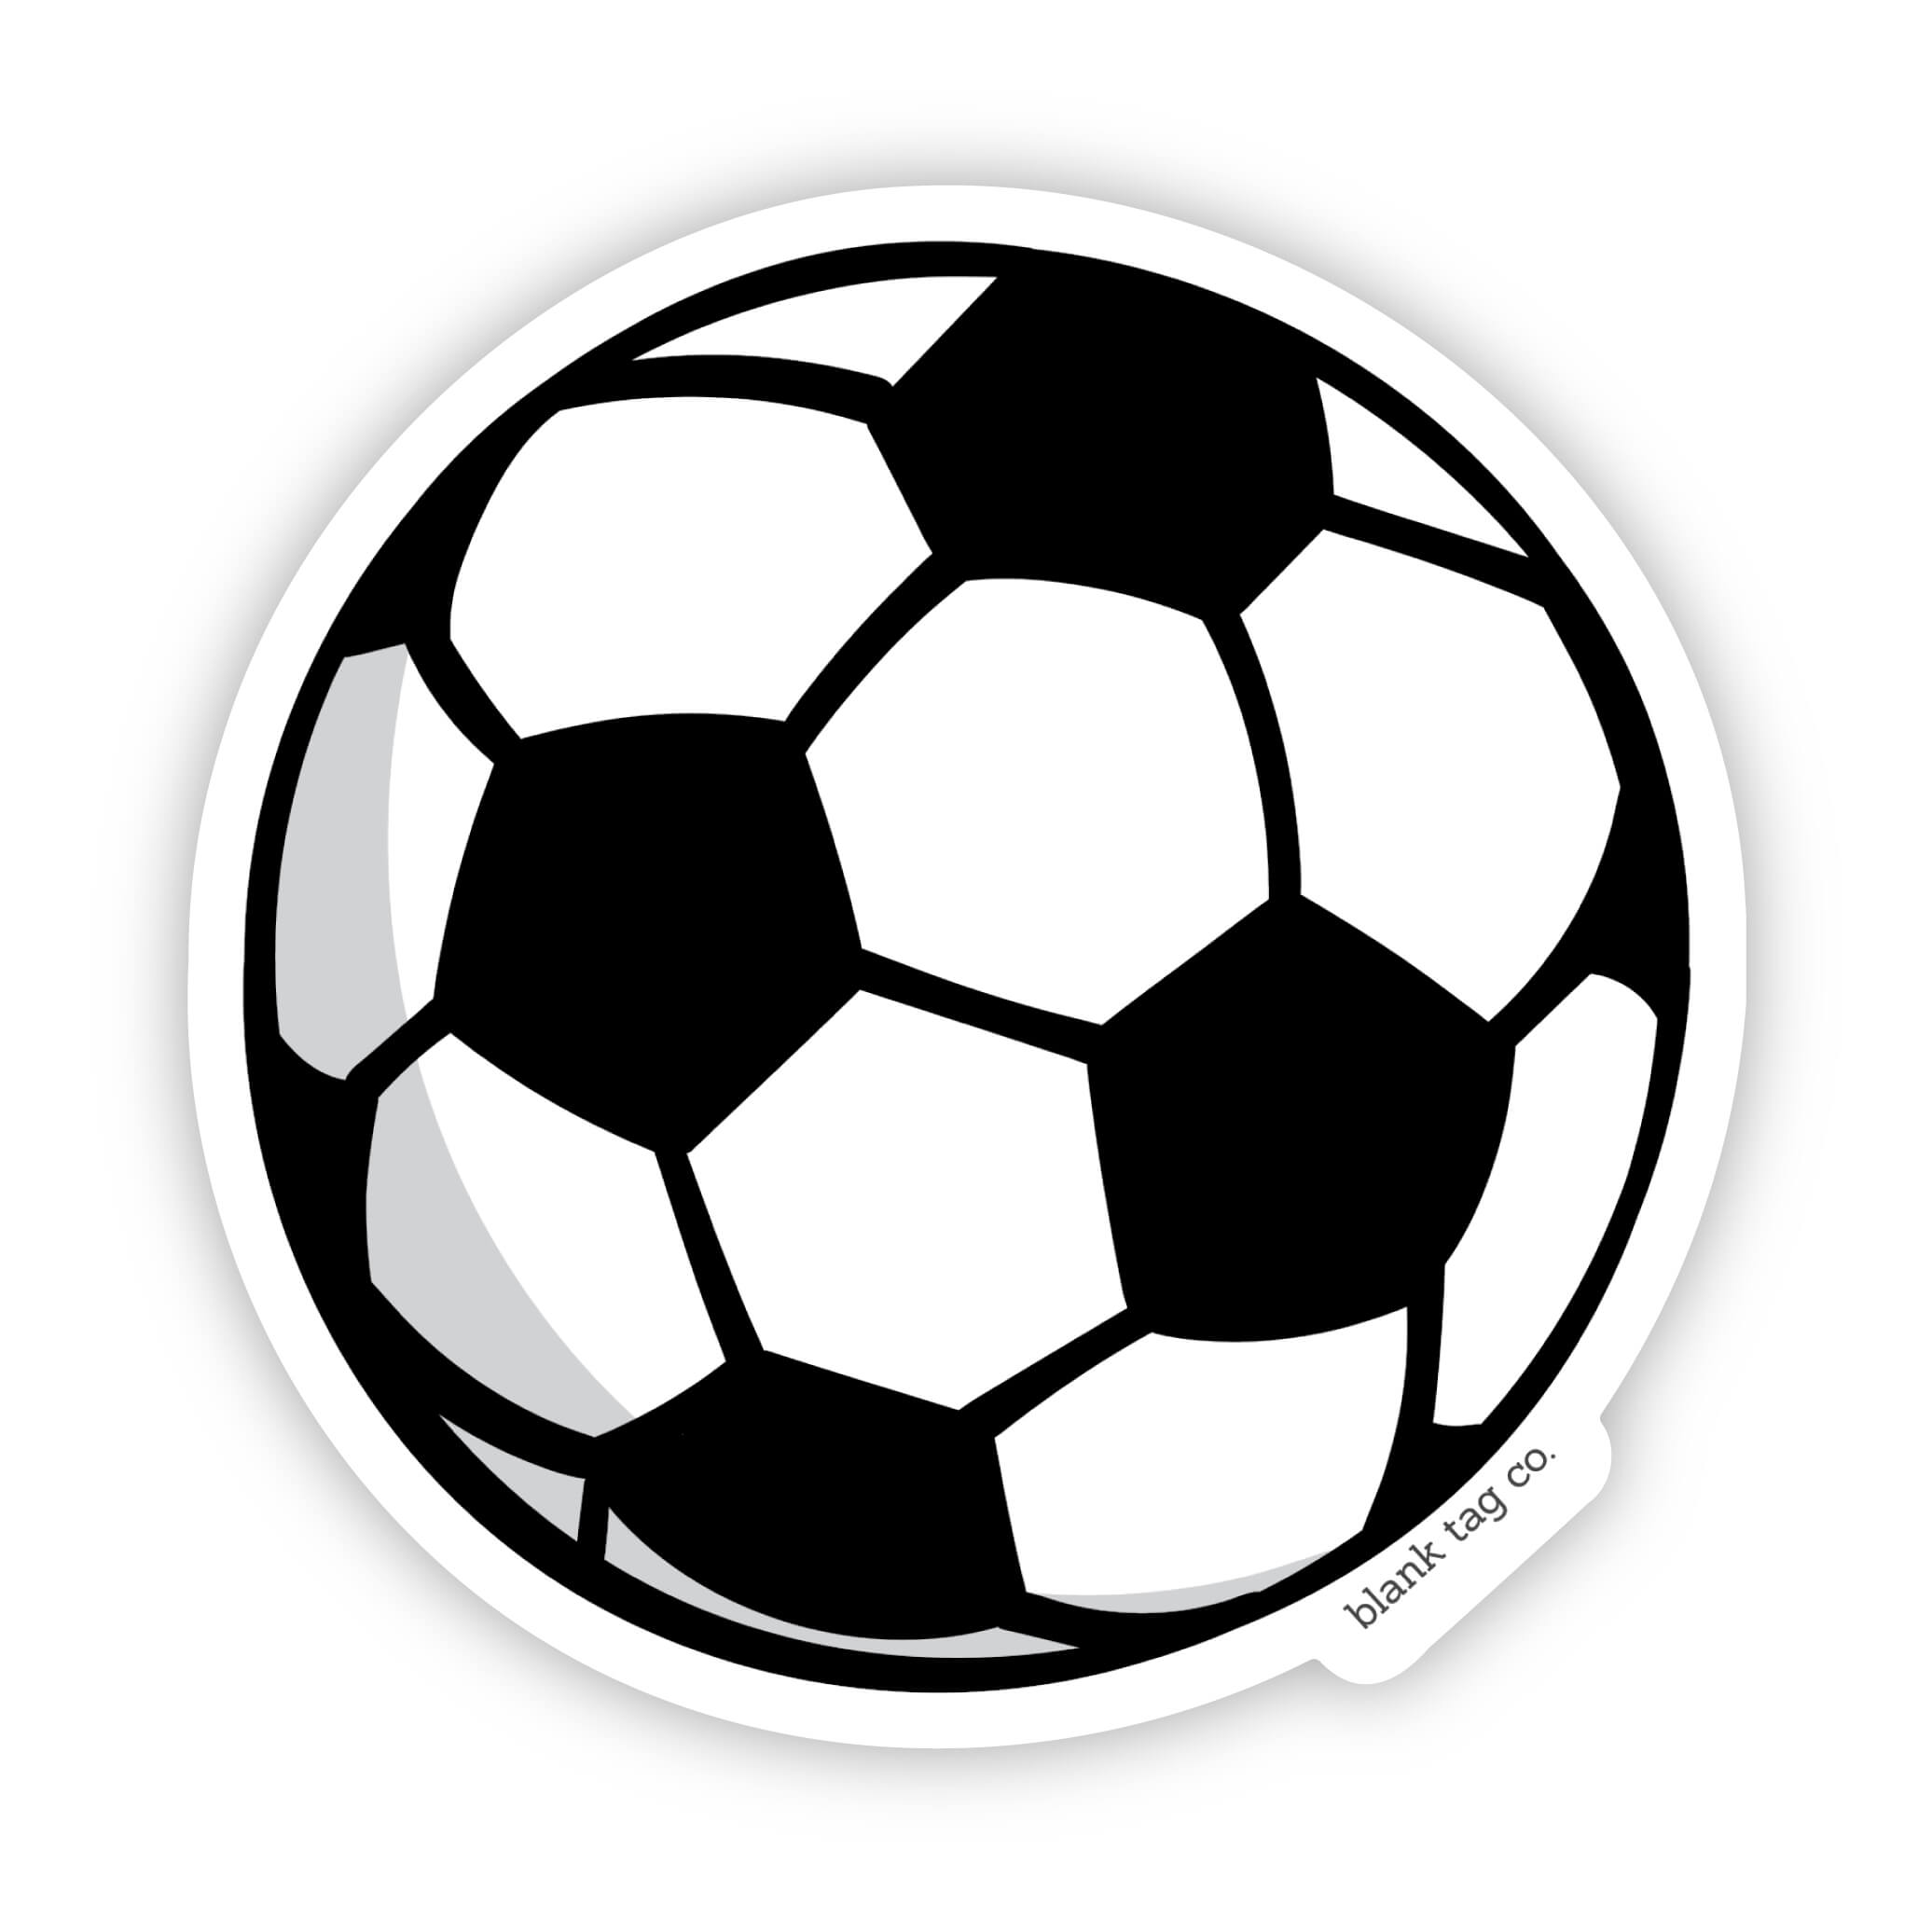 The Soccer Ball Sticker